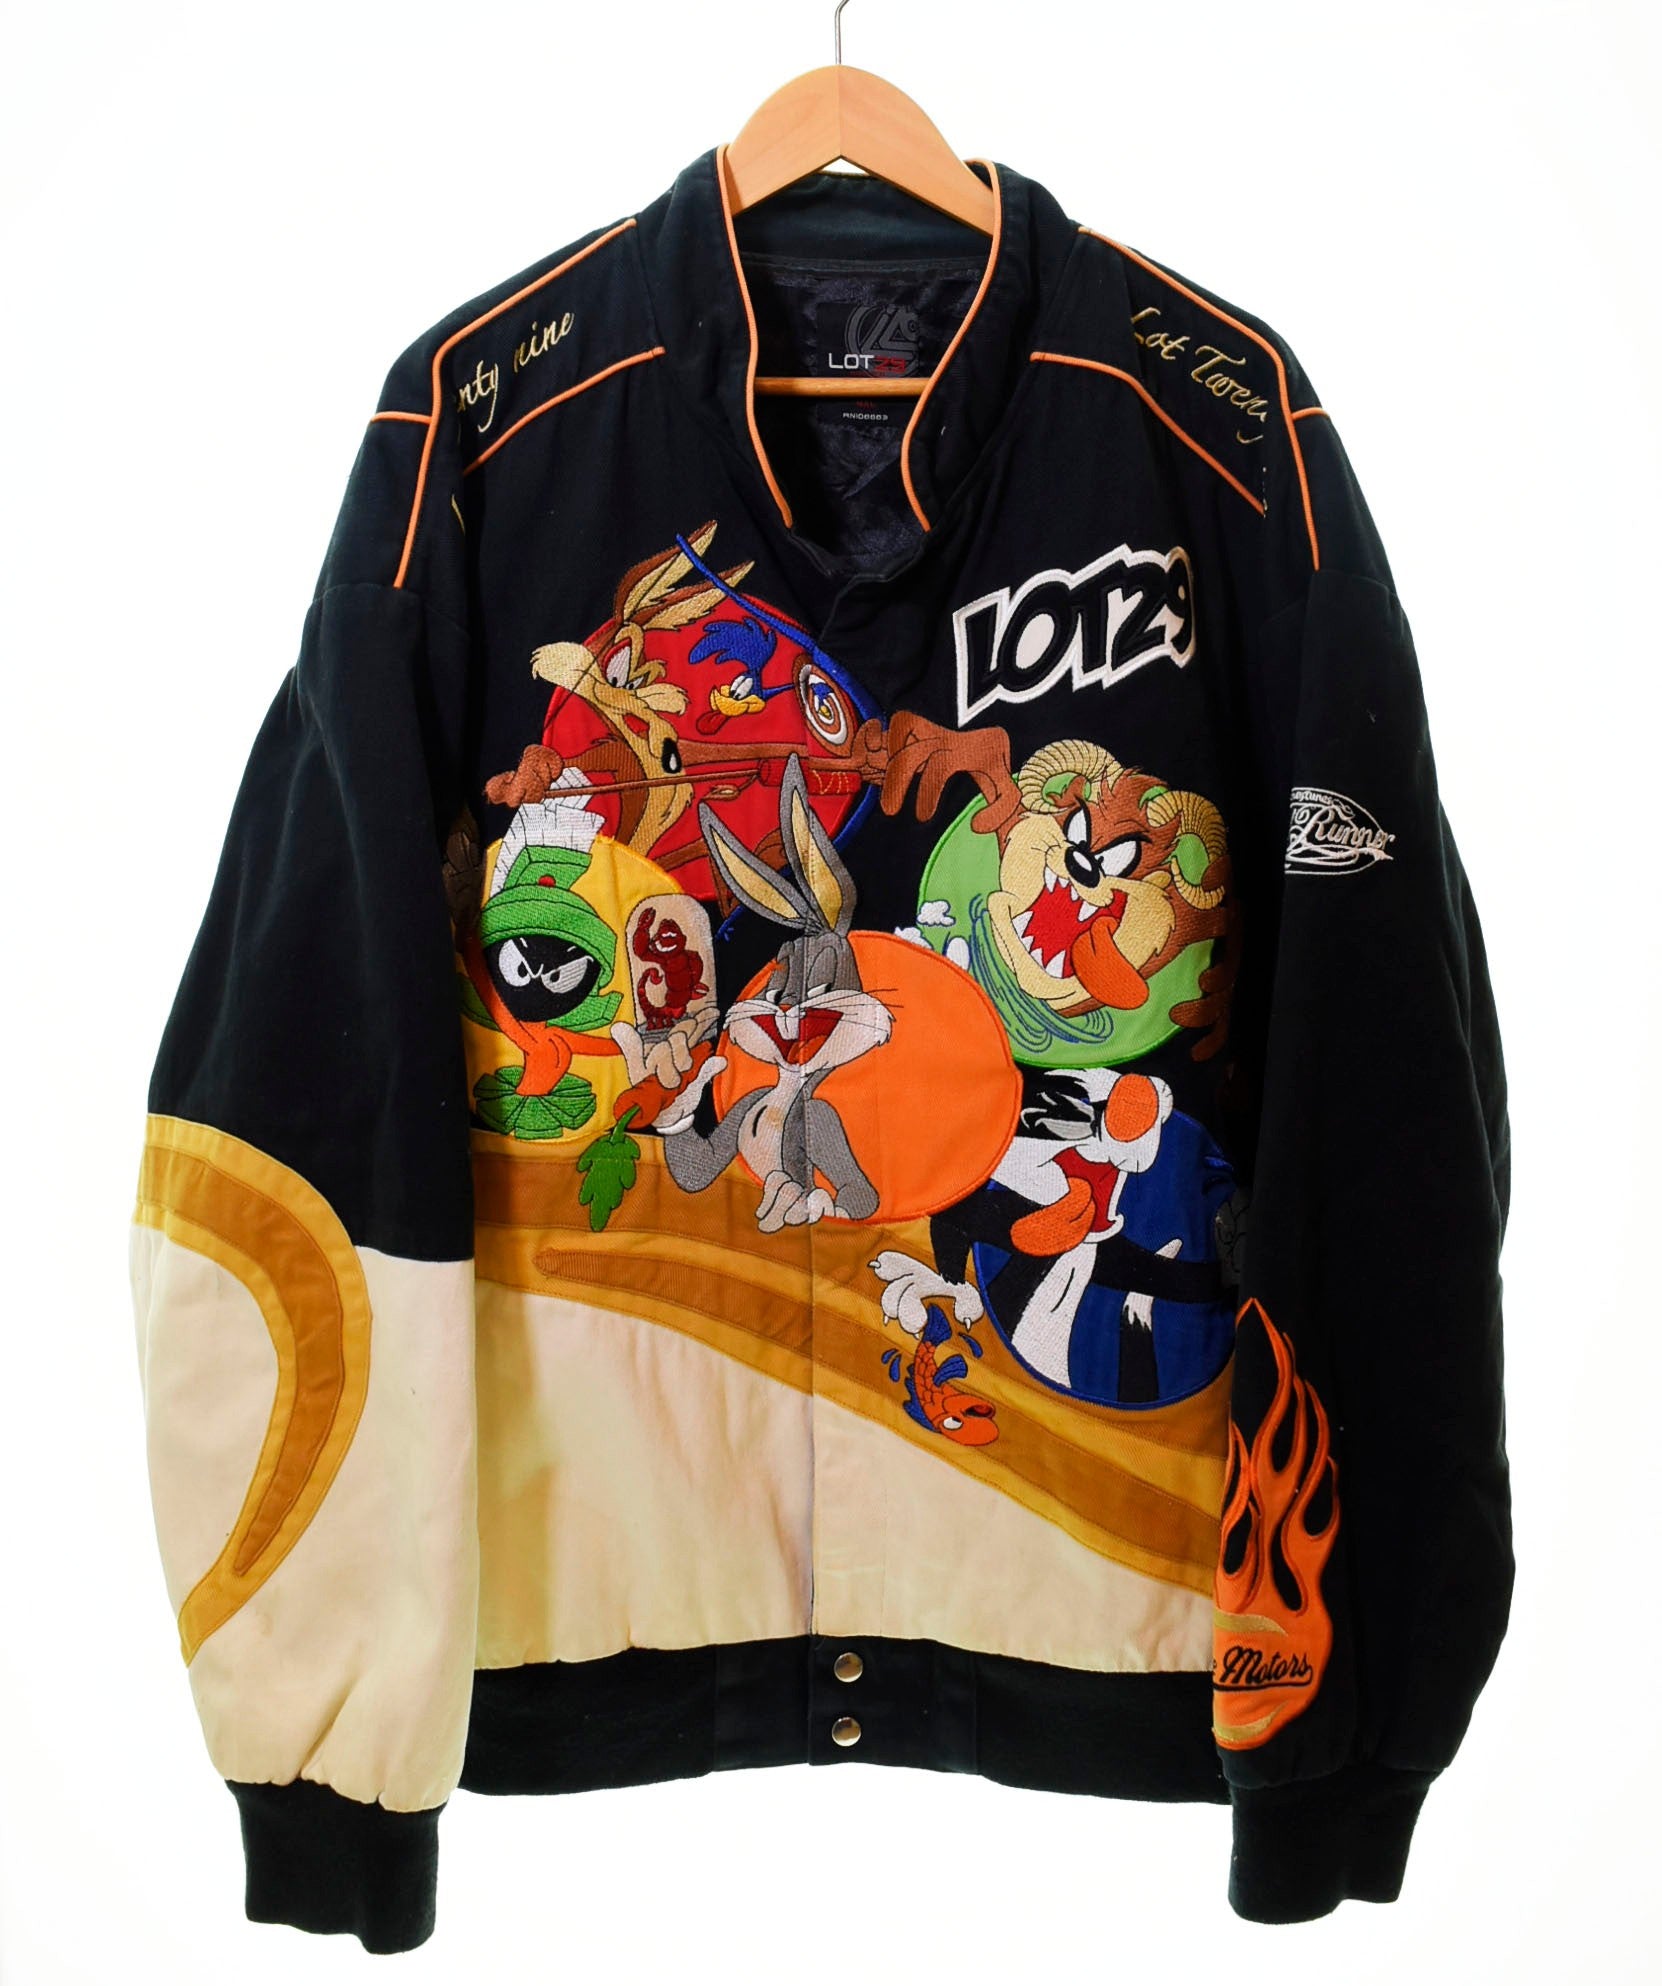 8,510円90's Racing jacket レーシングジャケット